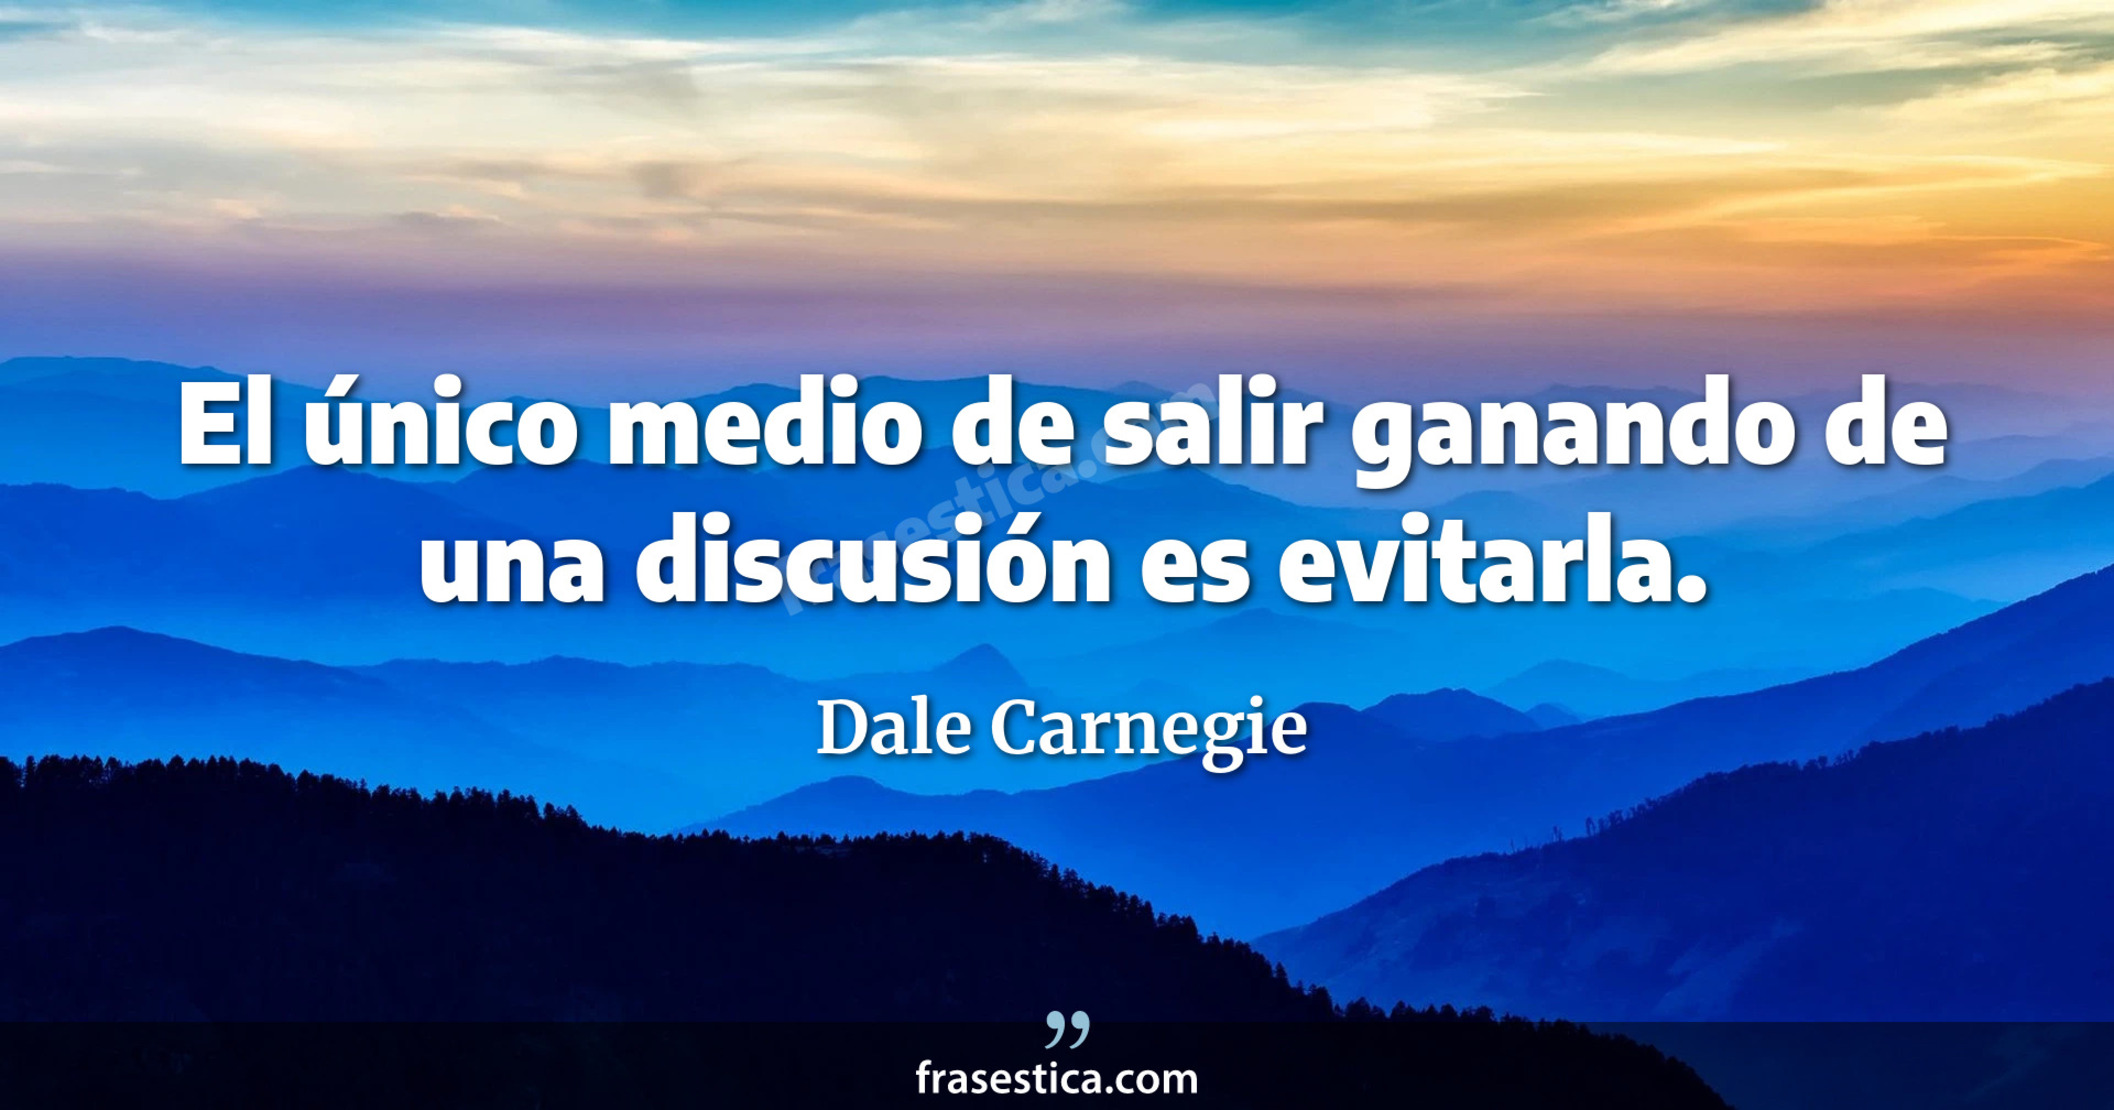 El único medio de salir ganando de una discusión es evitarla. - Dale Carnegie